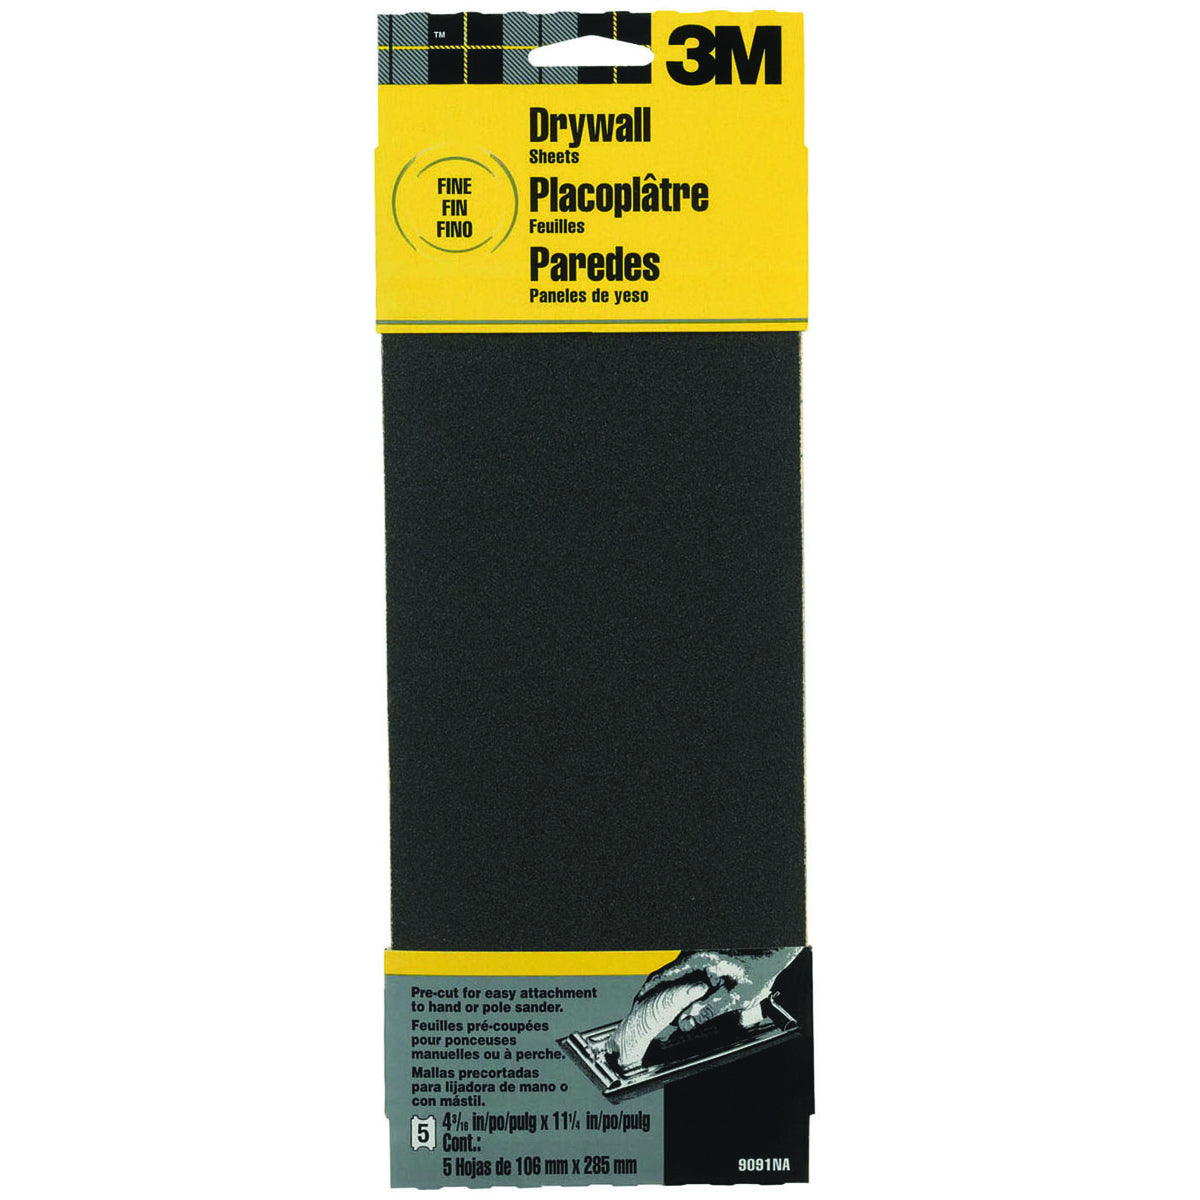 3M 9091 Drywall Sanding Sheet Sandpaper, 4-3/16" x 11-1/4", Fine, 5-Pack